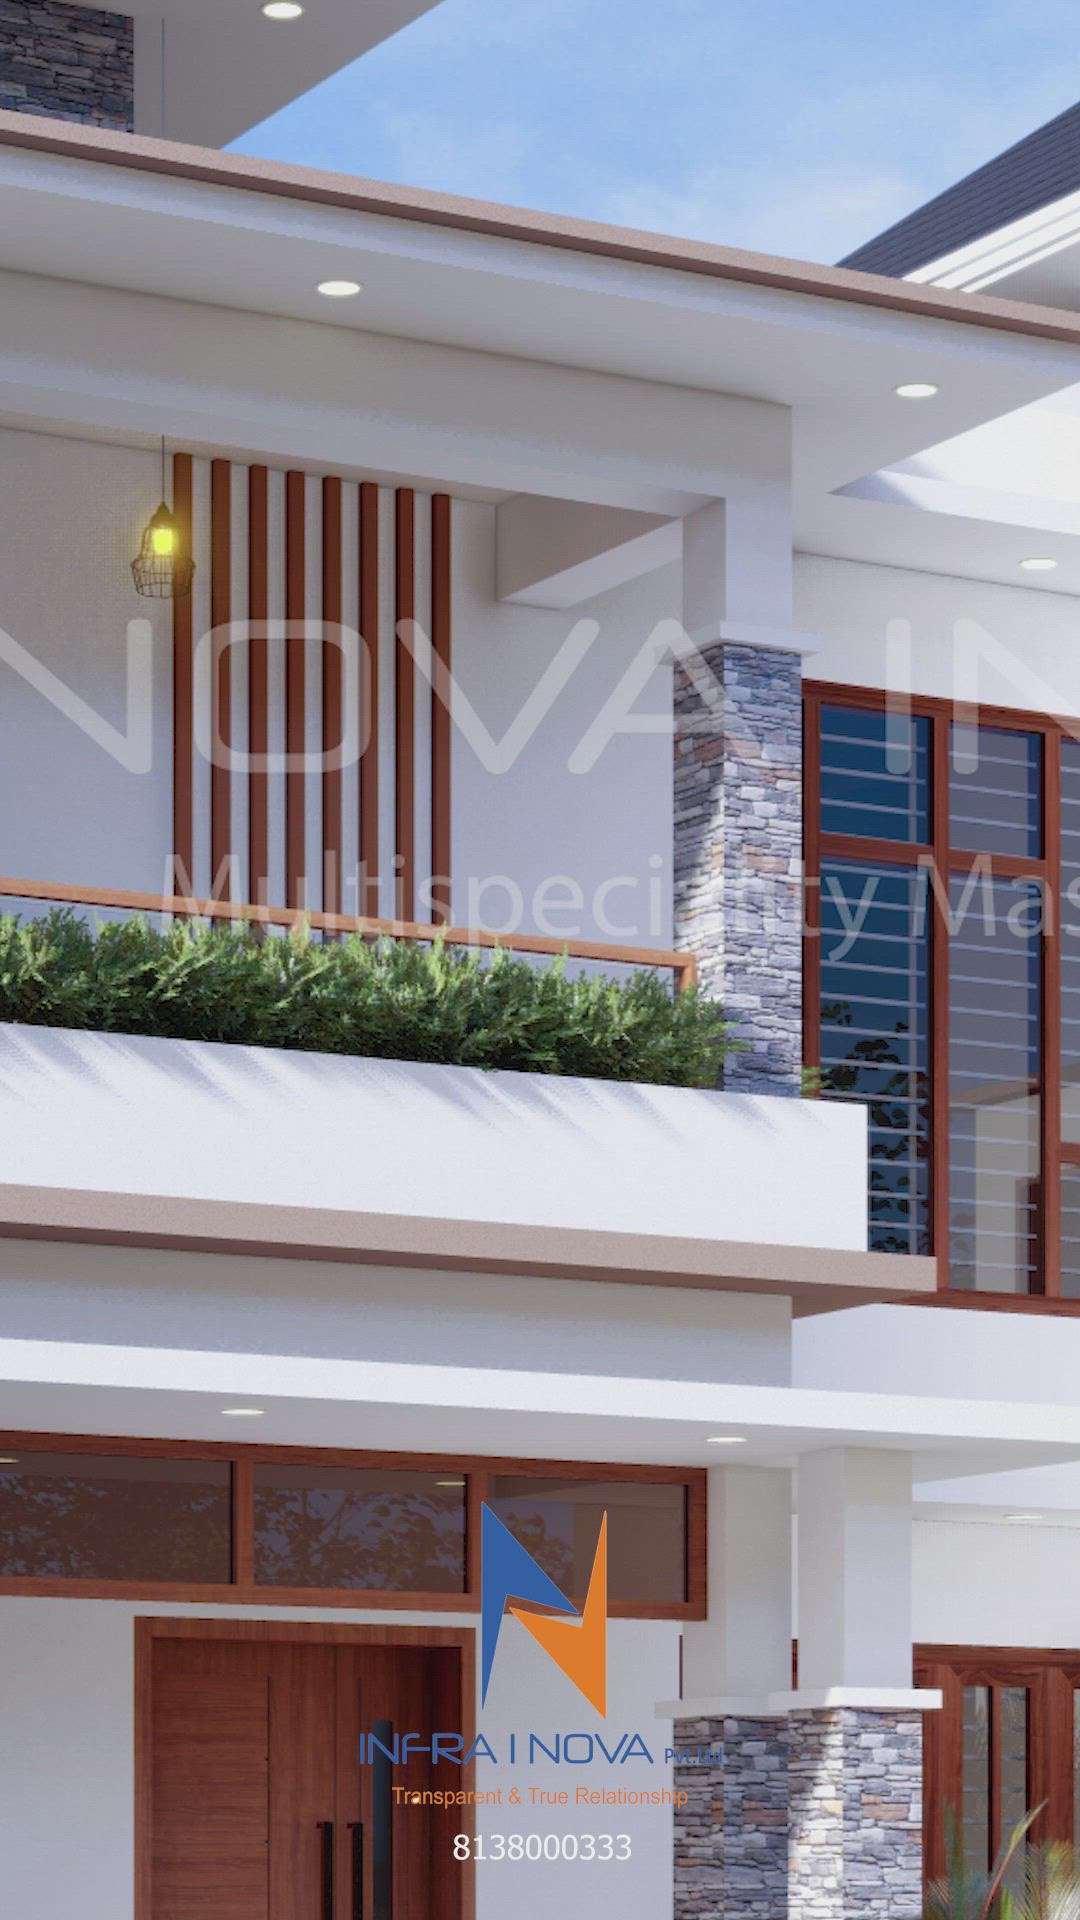 Elevation design by Infra I Nova✨

2900sq.ft
4BHK
TVM

#kerala
#keraladesigners #keralaelevation #homedesign #elevation #elevationdesign #keralahomes #keralahome #trivandrumhome #infrainova #infrainovadesign #designandconstruction